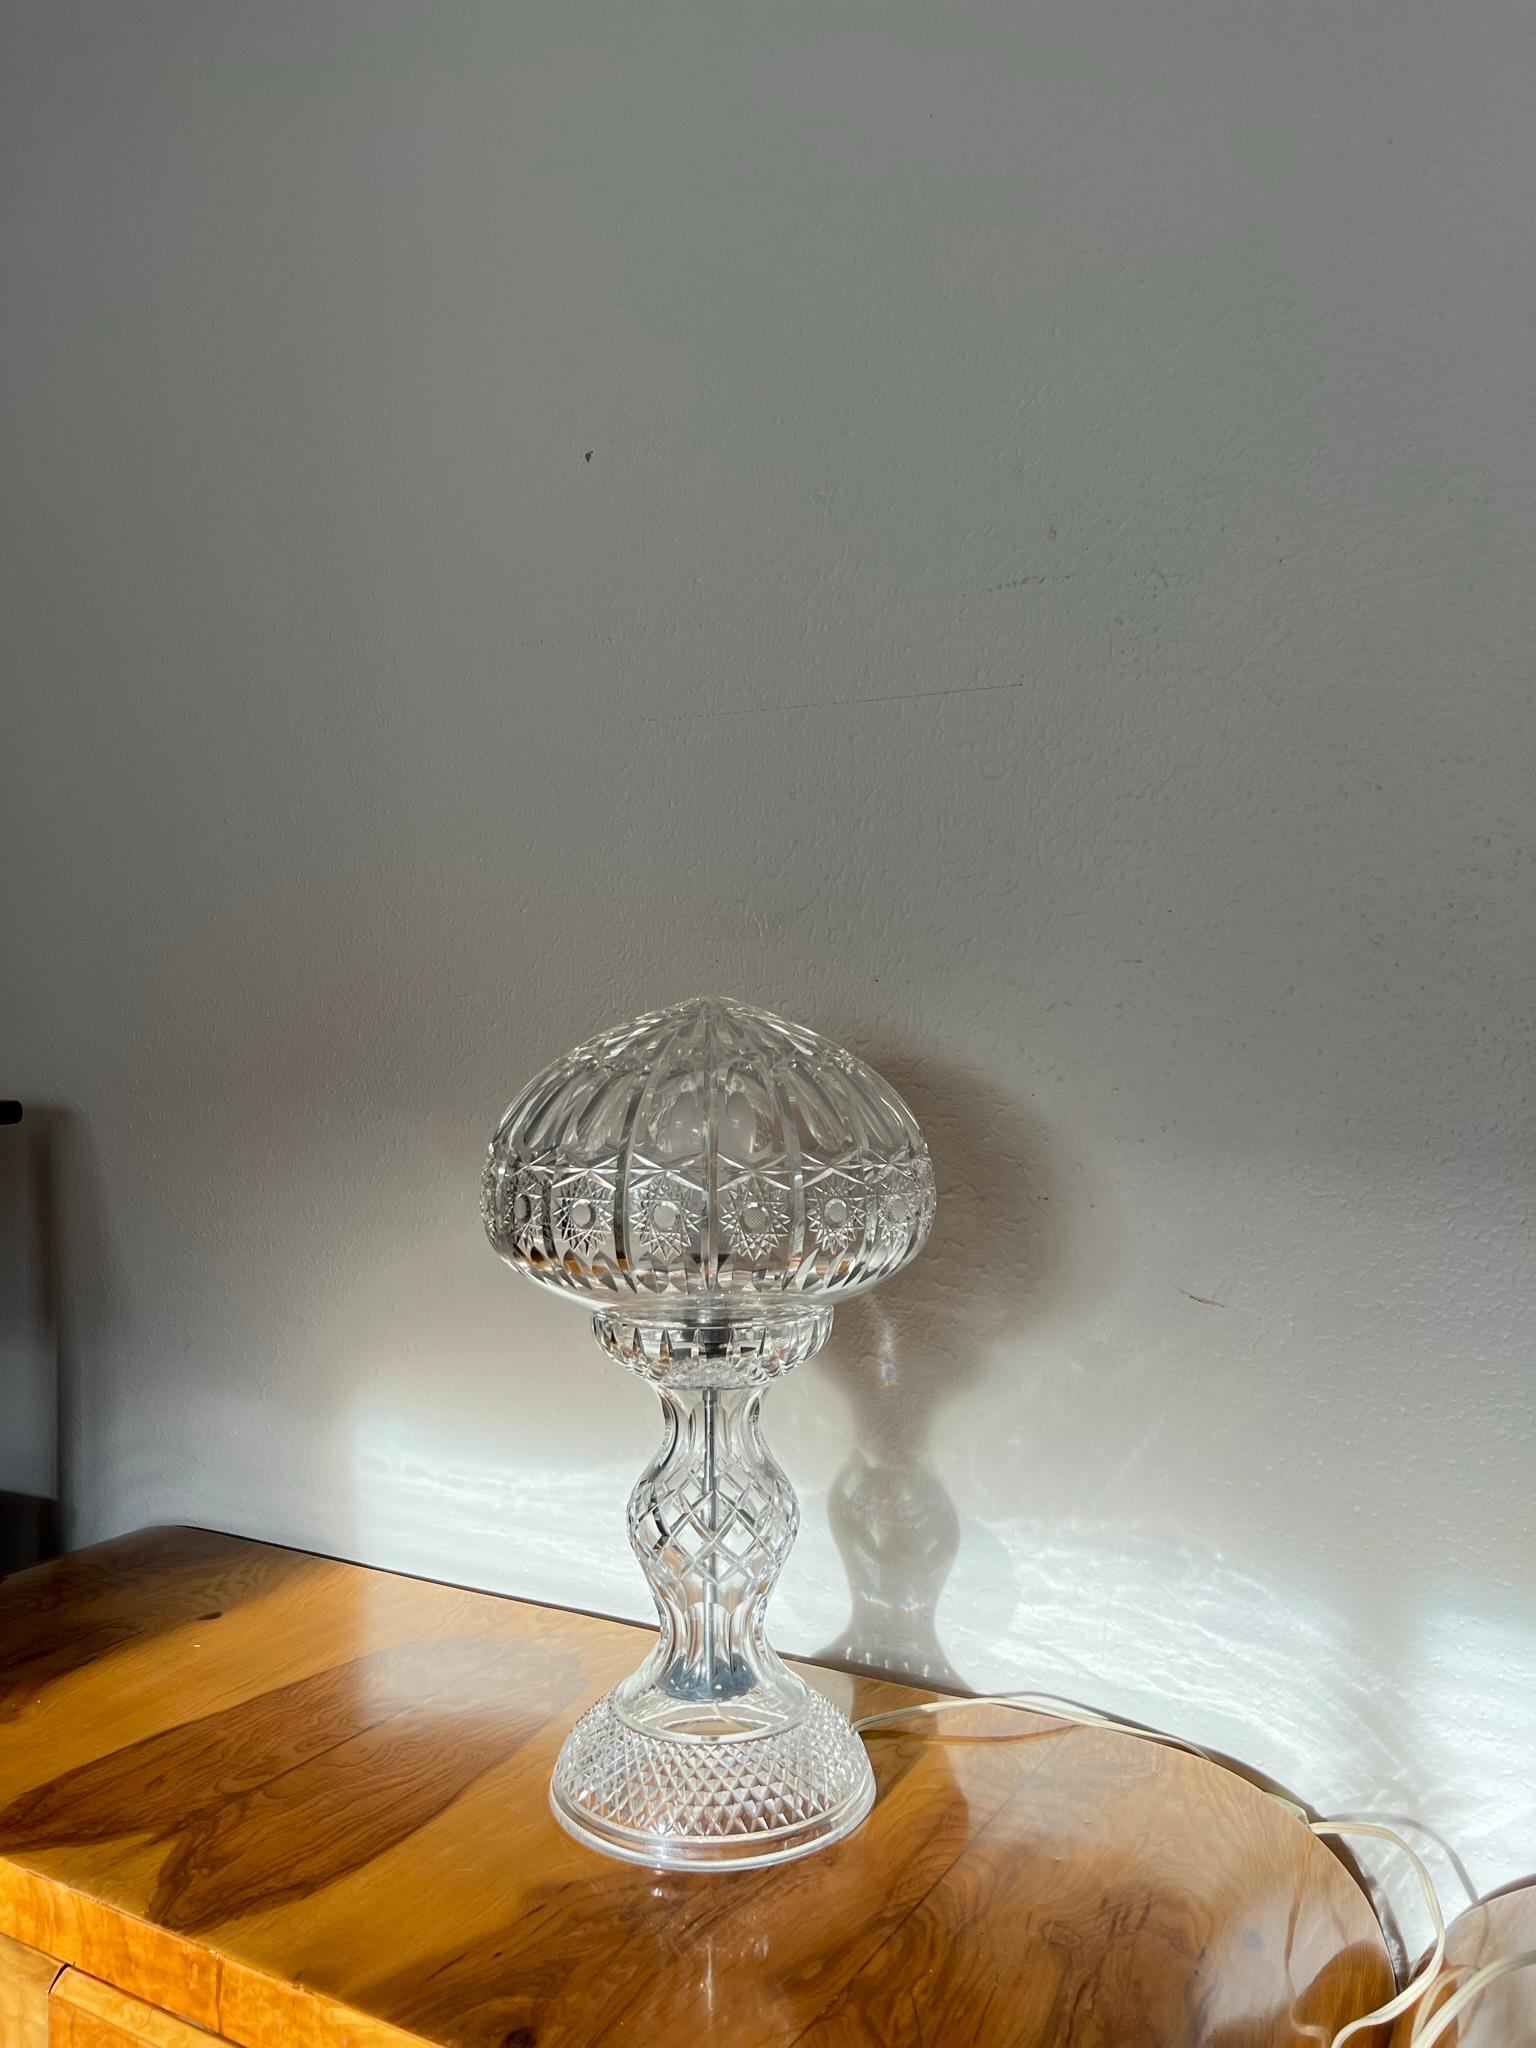 Lampe ancienne en cristal taillé à la main avec base en forme de vase balustre et abat-jour en forme de champignon.

Dimensions : 18,5